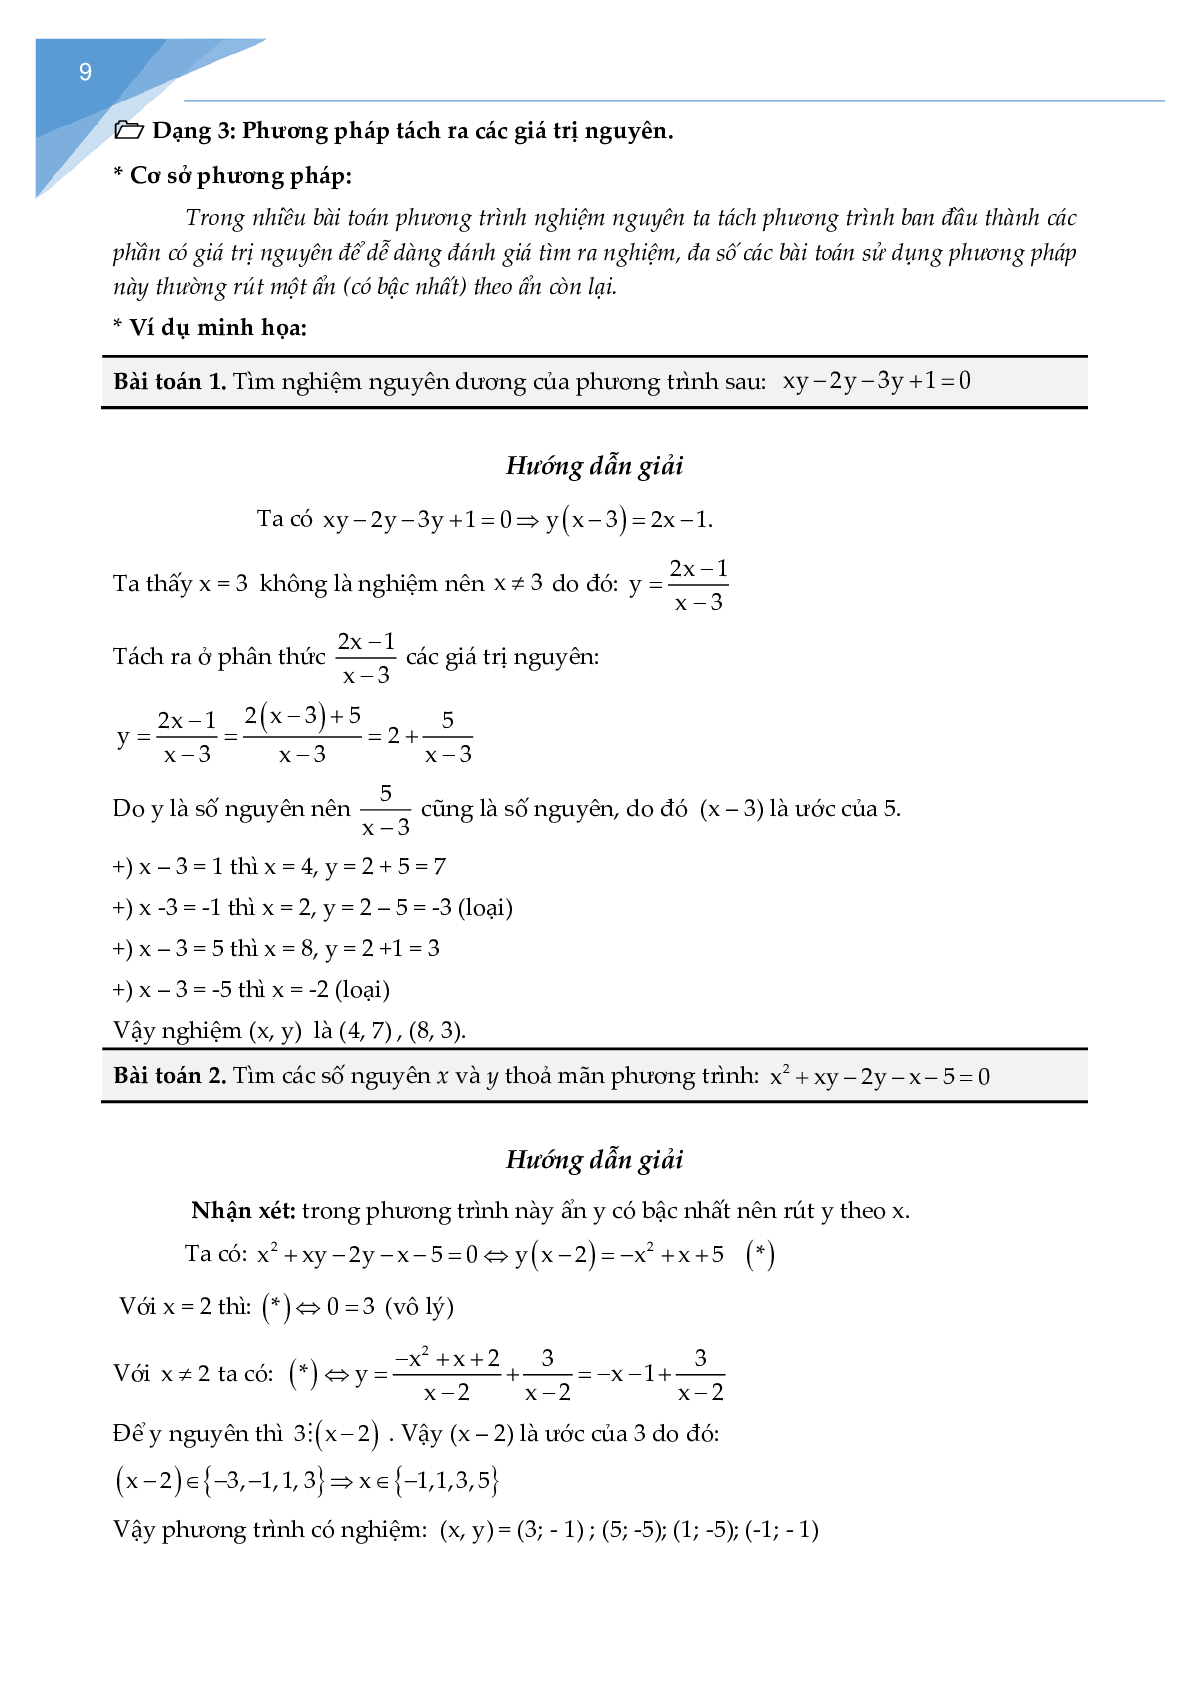 Chuyên đề phương trình nghiệm nguyên (trang 8)